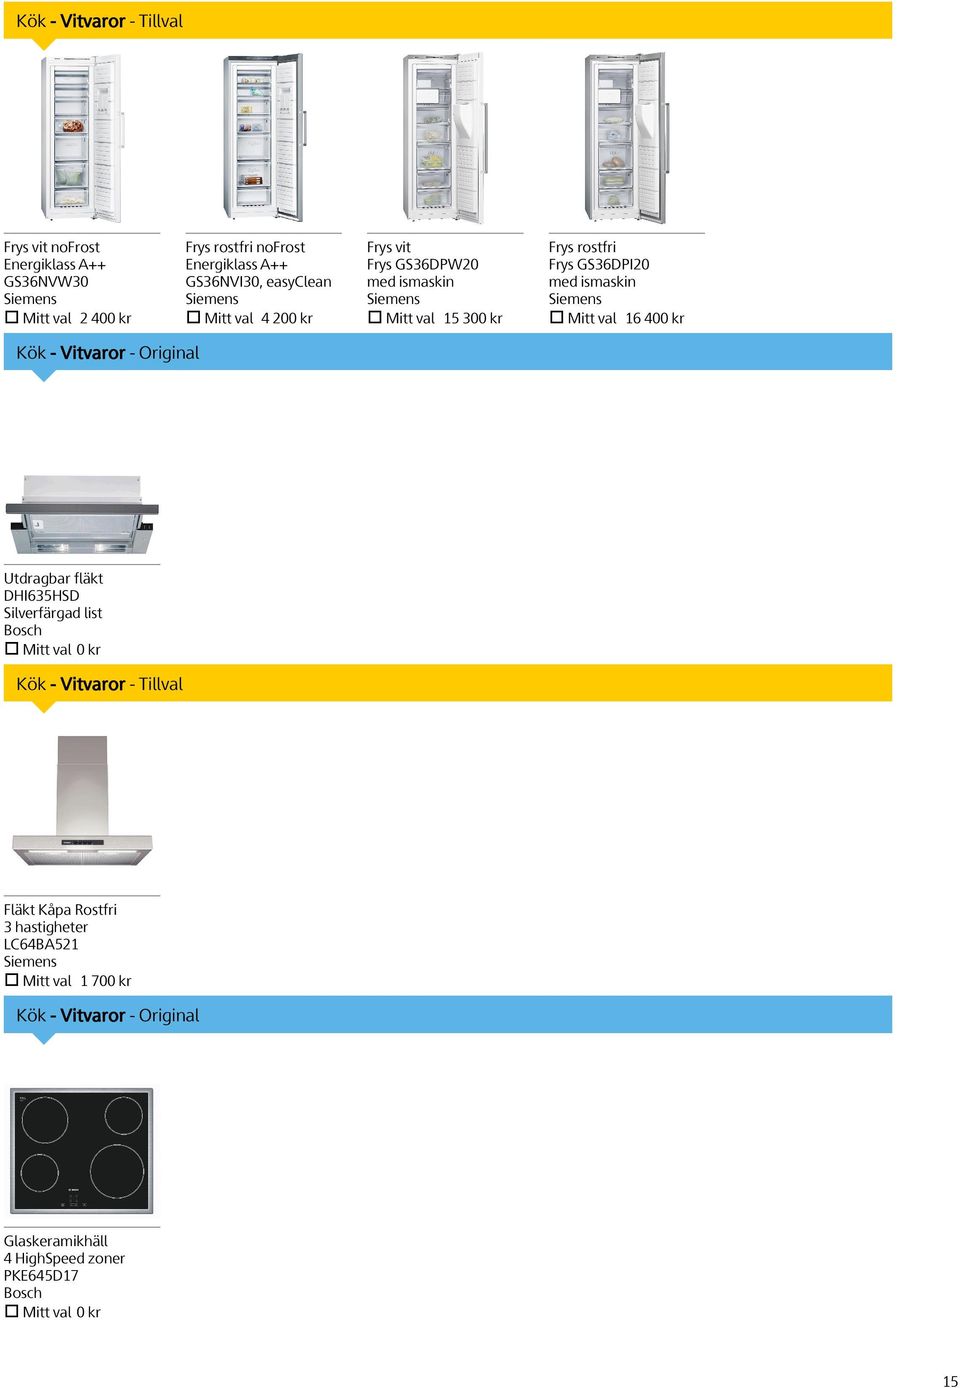 Siemens Mitt val 16 400 kr Kök - Vitvaror - Original Utdragbar fläkt DHI635HSD Silverfärgad list Bosch Mitt val 0 kr Kök - Vitvaror - Tillval